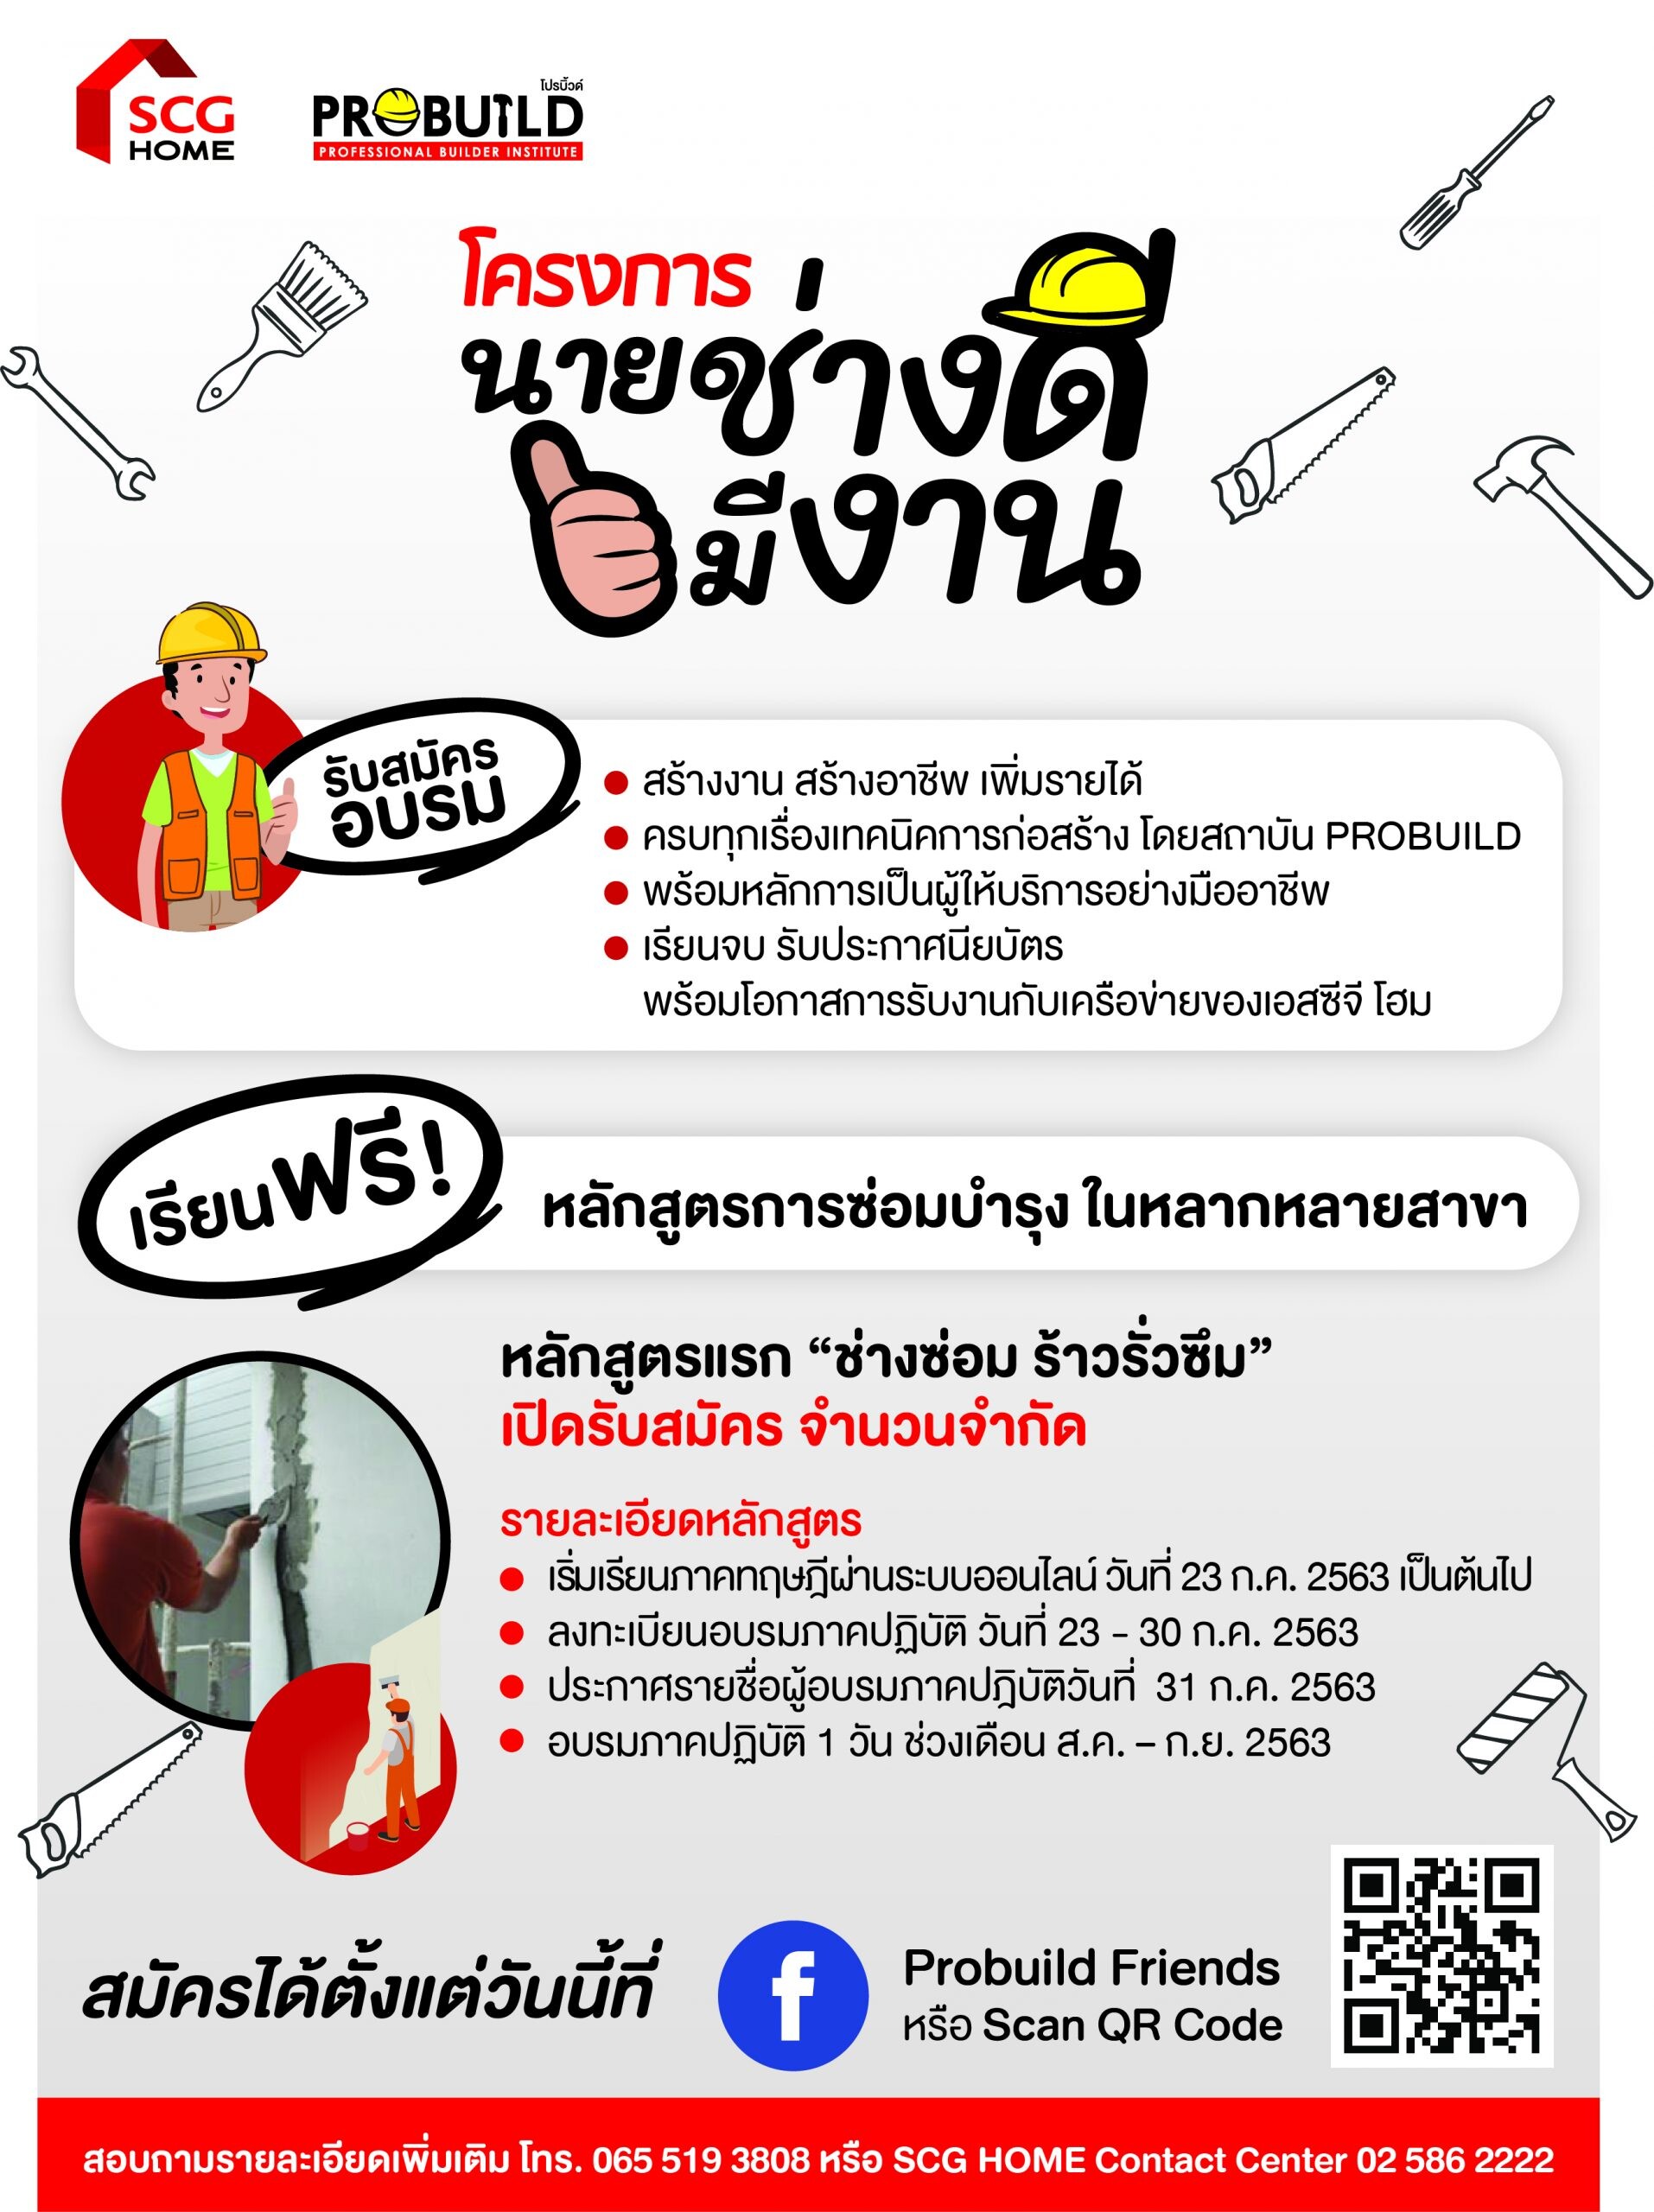 เอสซีจี จับมือสถาบัน PROBUILD เปิดโครงการ “นายช่างดีมีงาน” จัดอบรมหลักสูตรช่างซ่อมบำรุง ช่วยเหลือแรงงานไทย โดยไม่คิดค่าใช้จ่าย